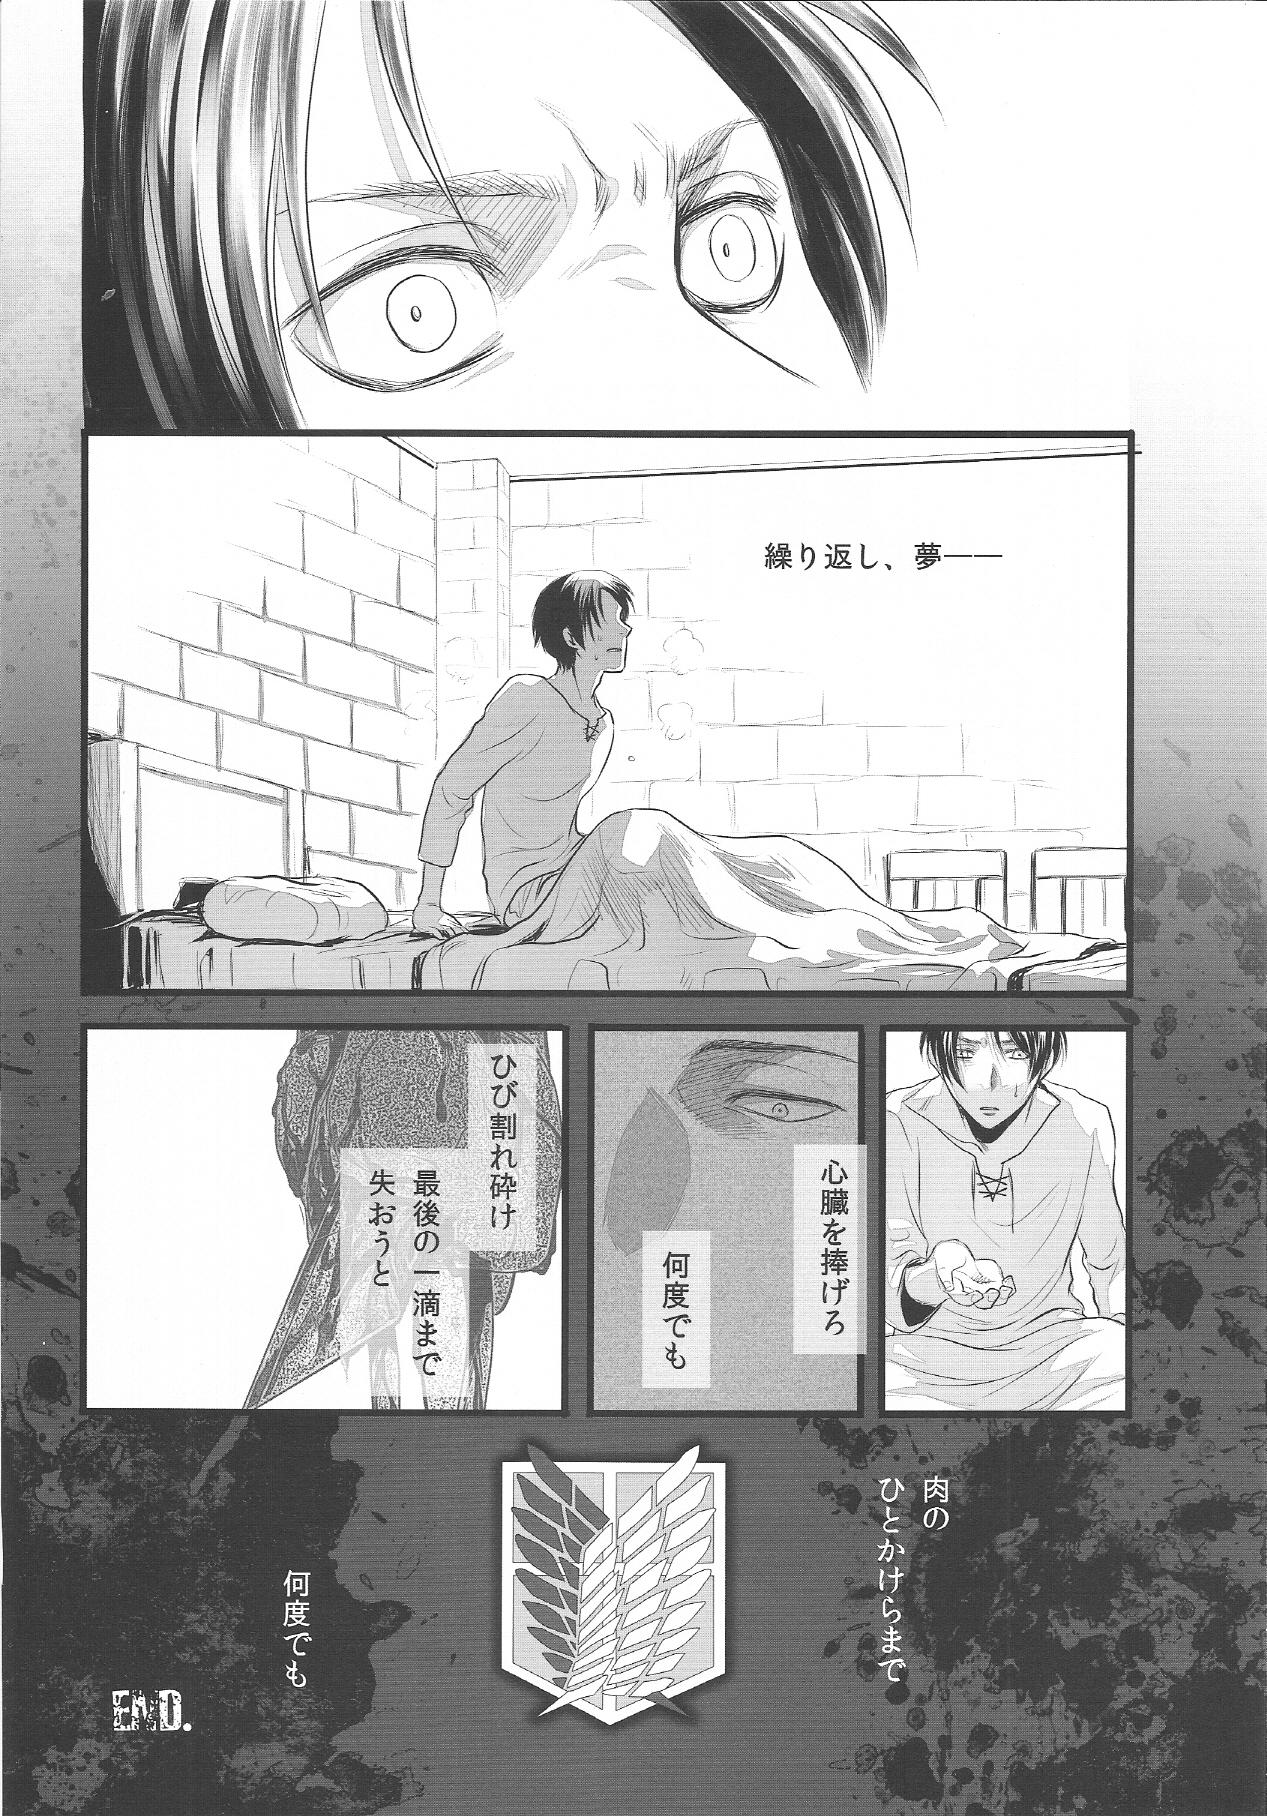 Femboy EreBoko - Shingeki no kyojin Moan - Page 7